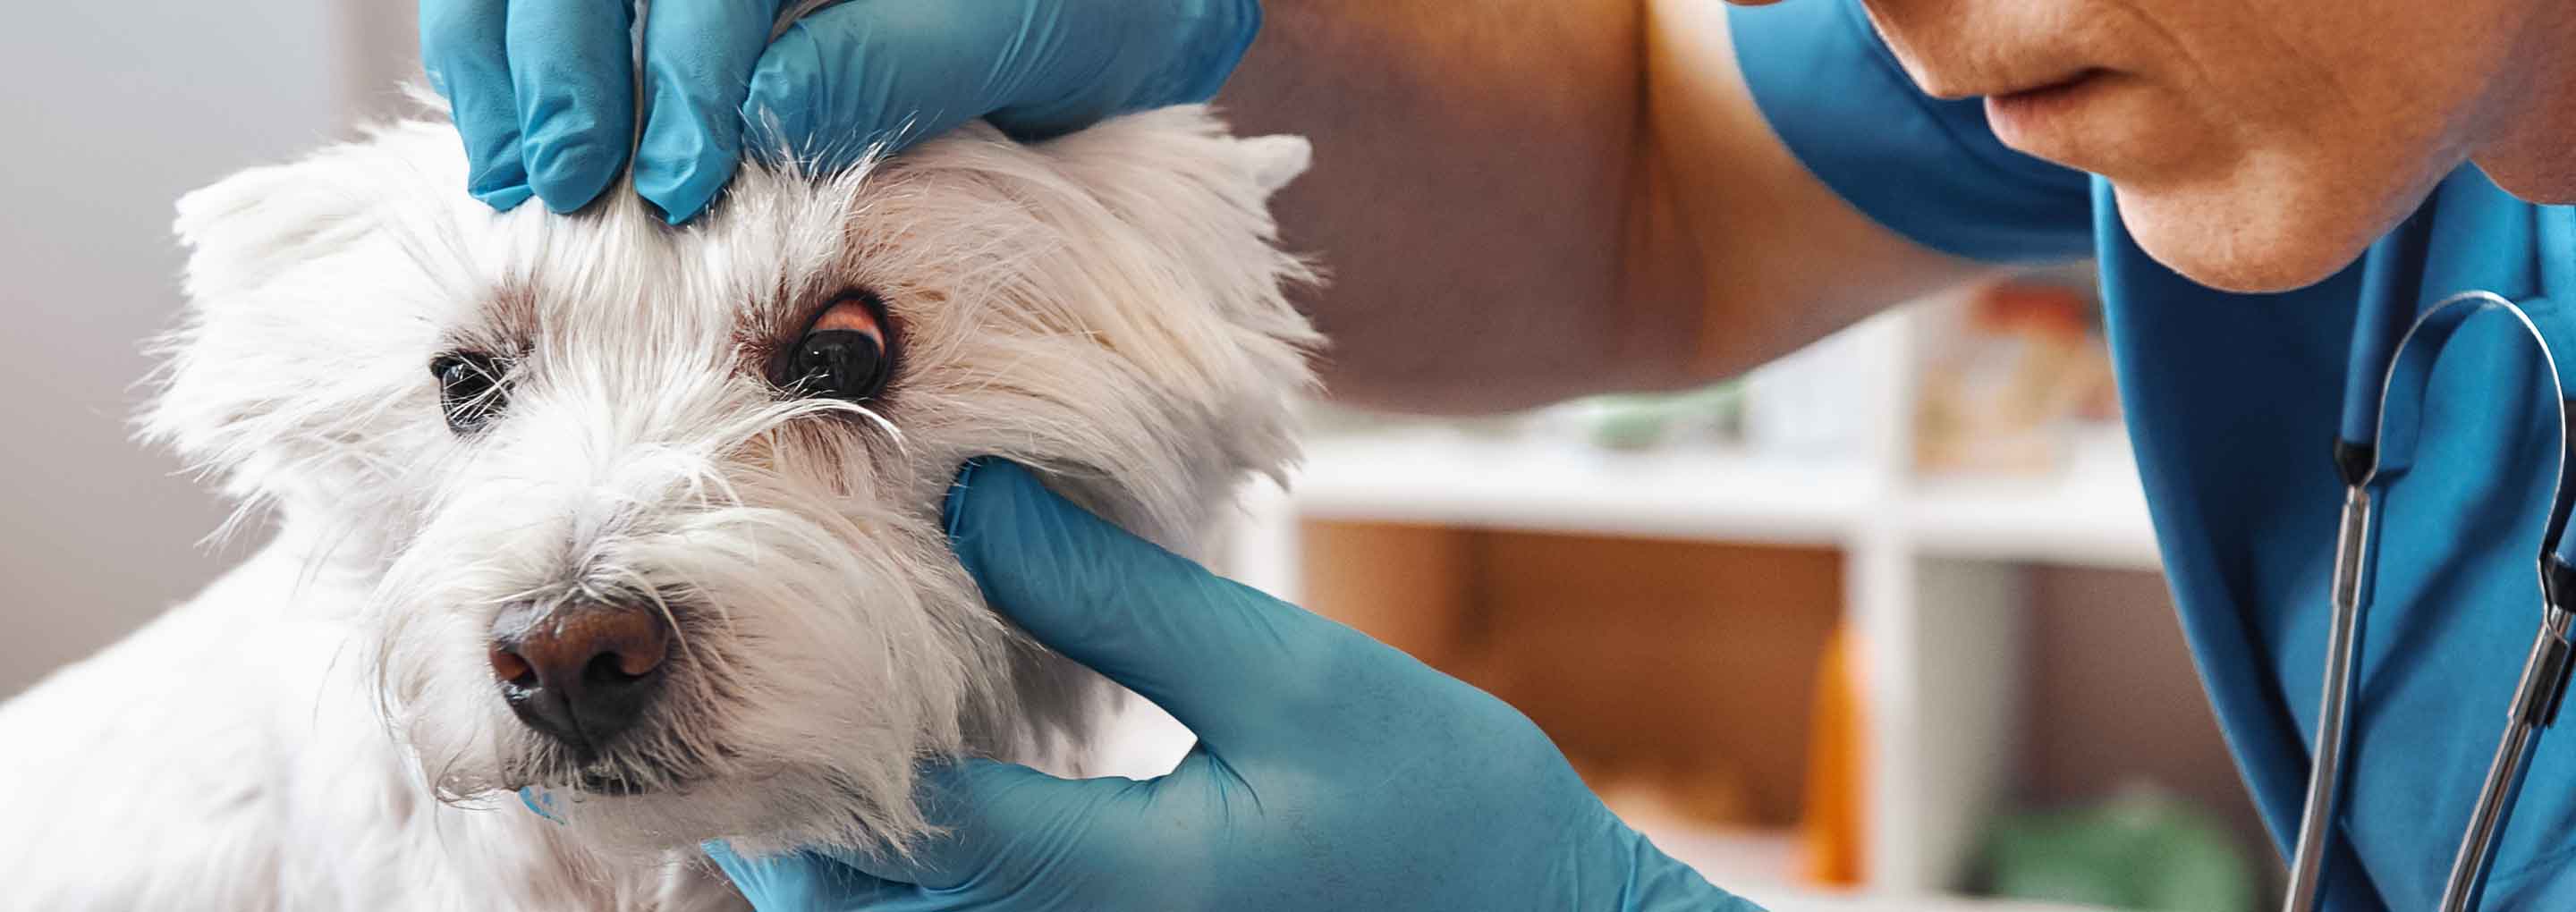 Ein kleiner Hund mit einer Bindehautentzündung wird von einem Tierarzt untersucht